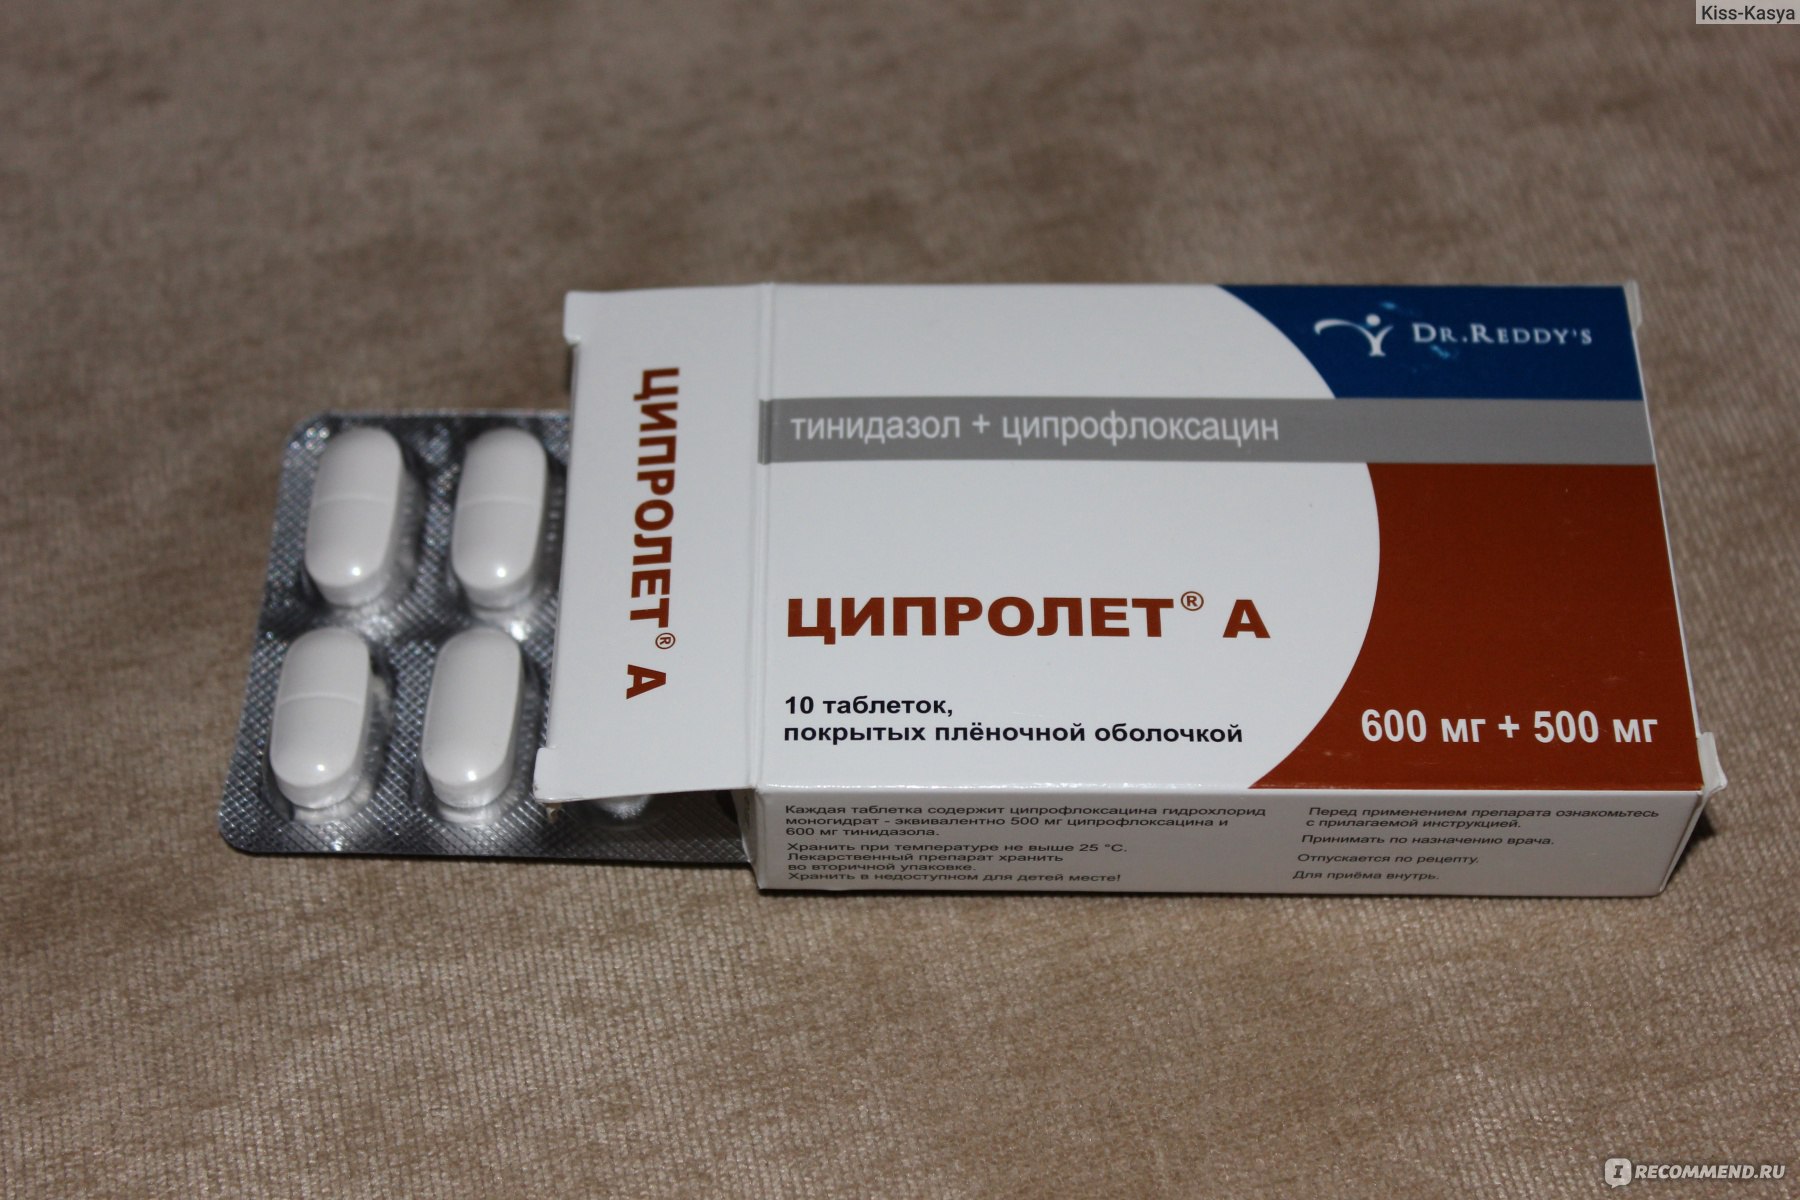 Ciprofloxacin blasenentzündung erfahrung